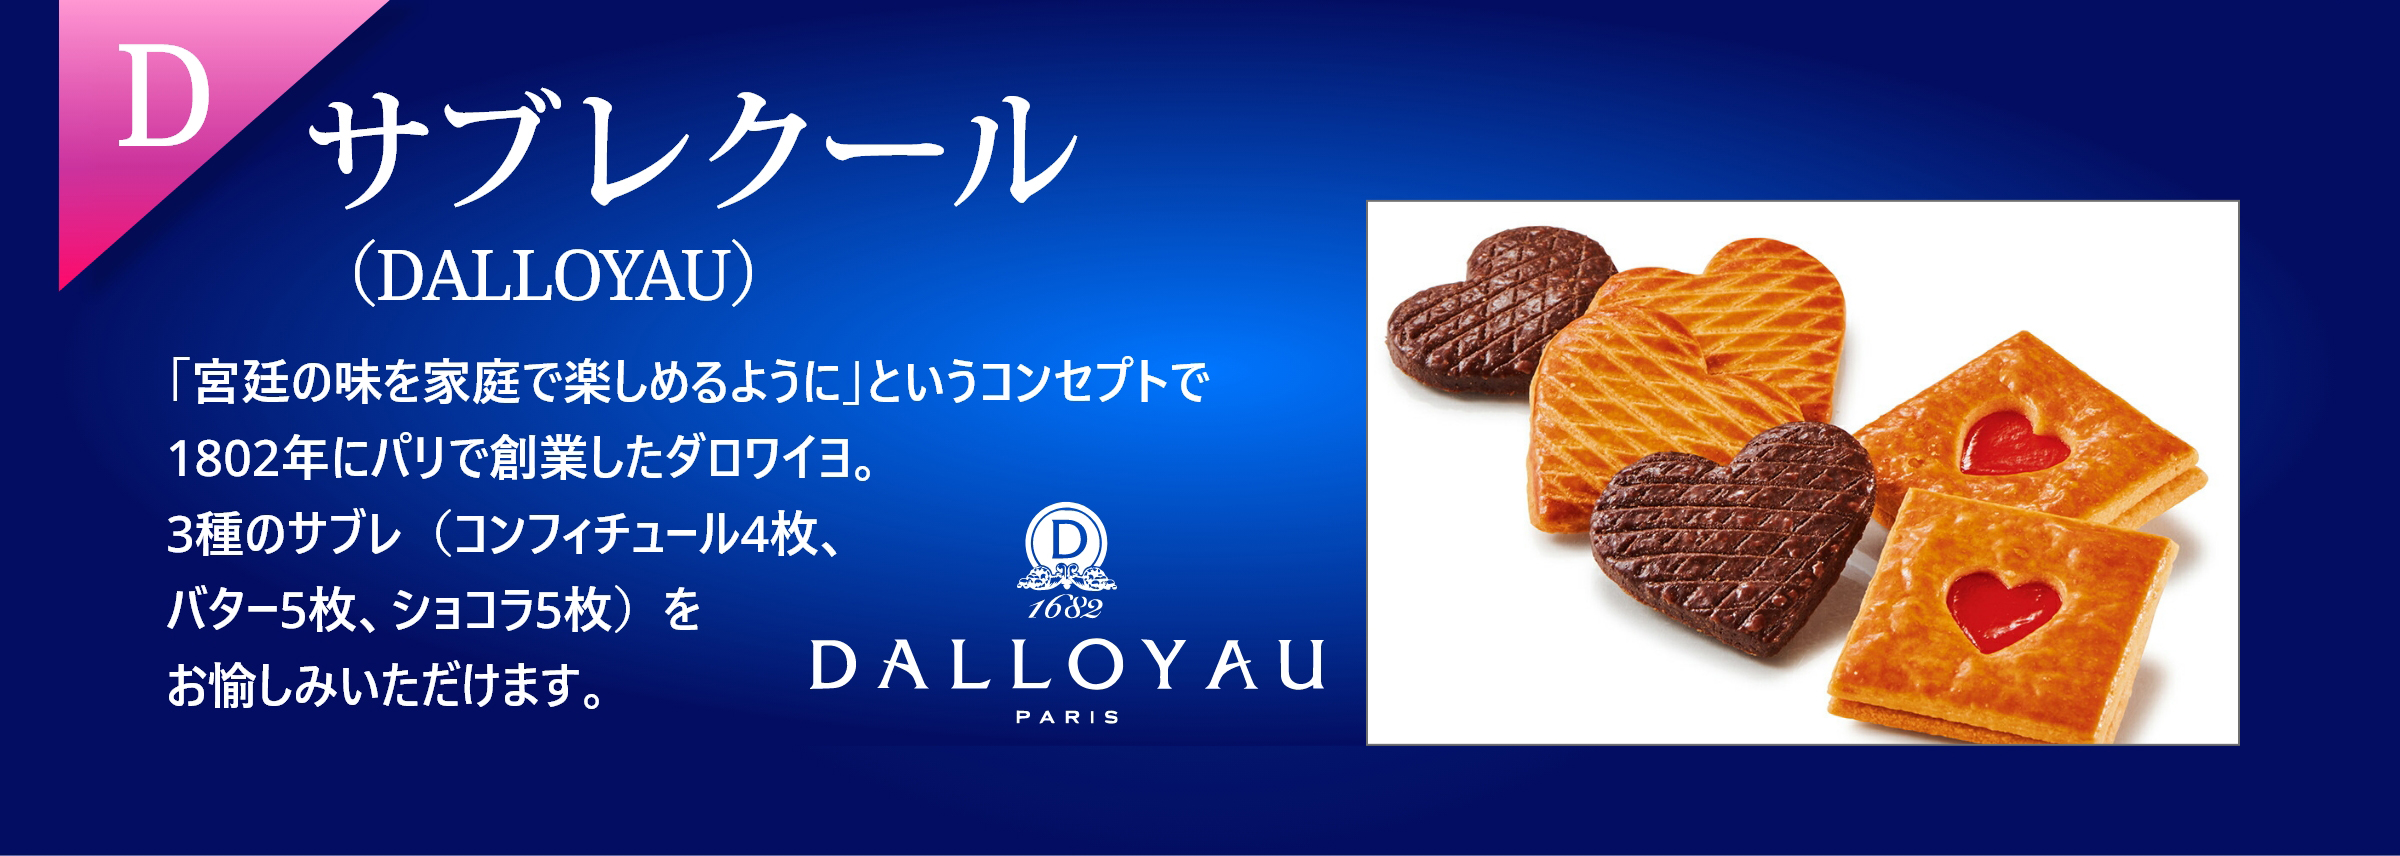 D サブレクールクッキー（DALLOPYAU）「宮廷の味を家庭で楽しめるように」というコンセプトで1802年にパリで創業したダロワイユ。コンフィチュール4枚、バター5枚、ショコラ5枚の計14枚、3種のサブレがお愉しみいただけます。